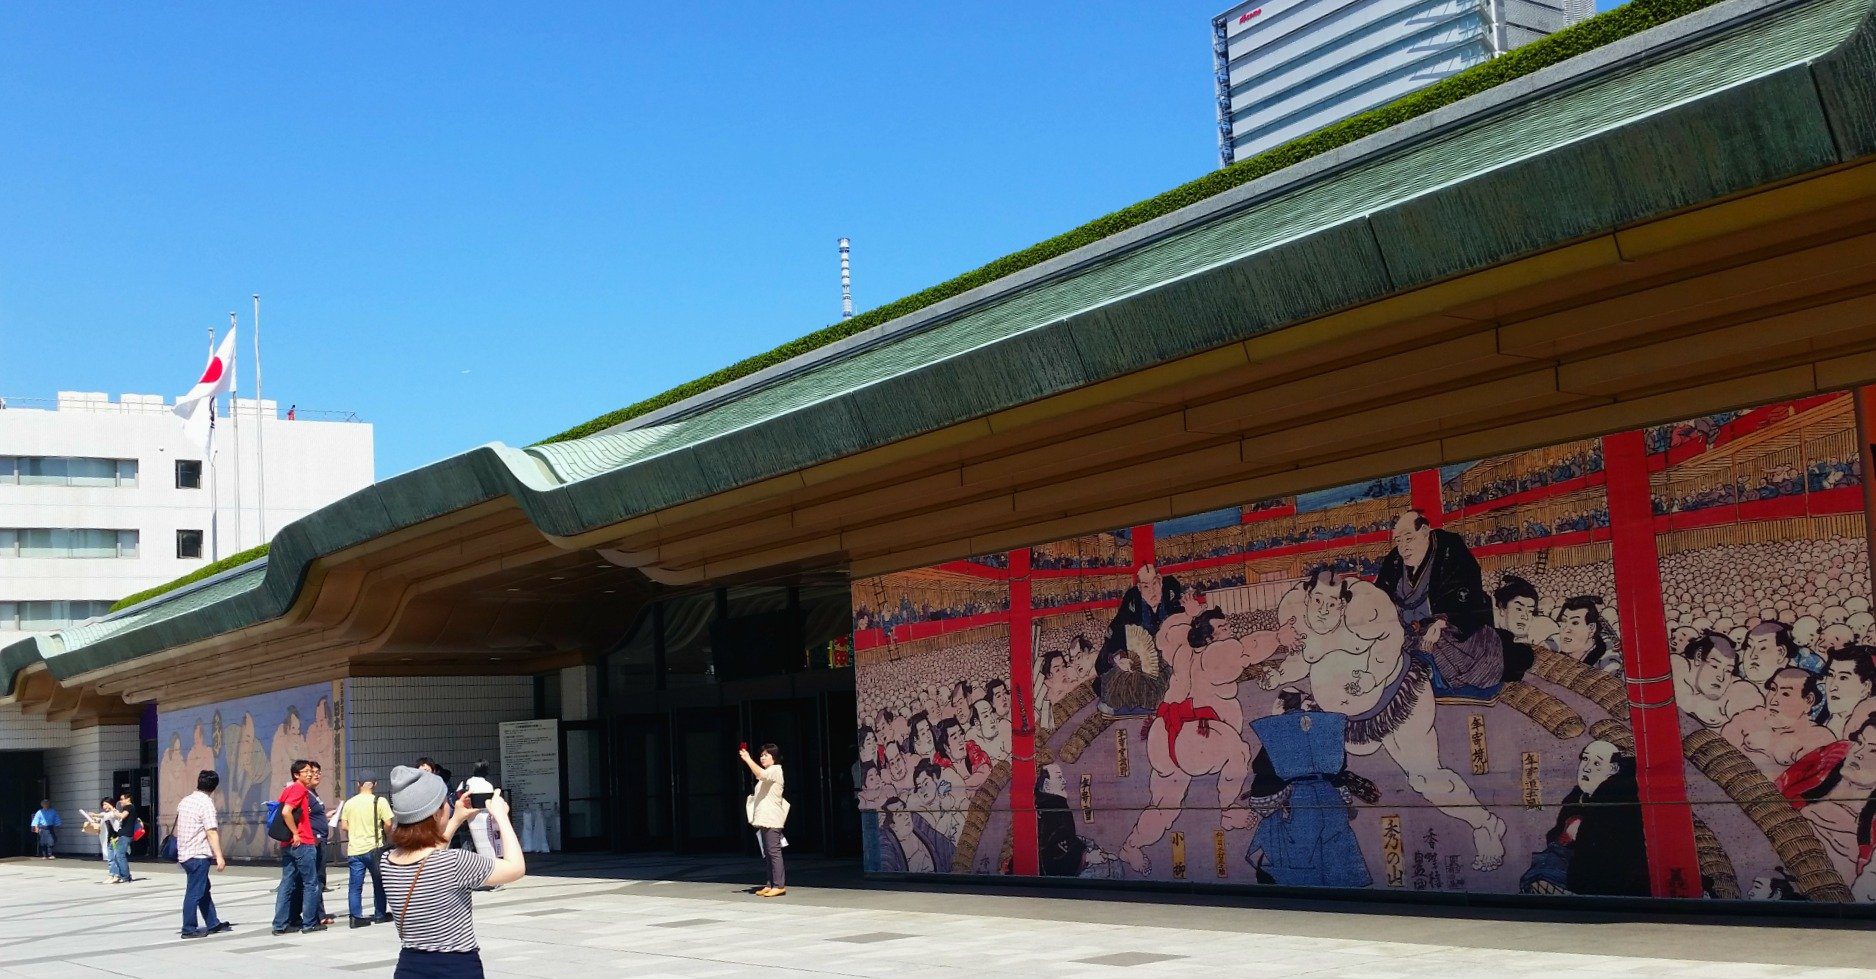 About to Enter the Ryogoku Kokugikan Sumo Wrestling Arena in Tokyo